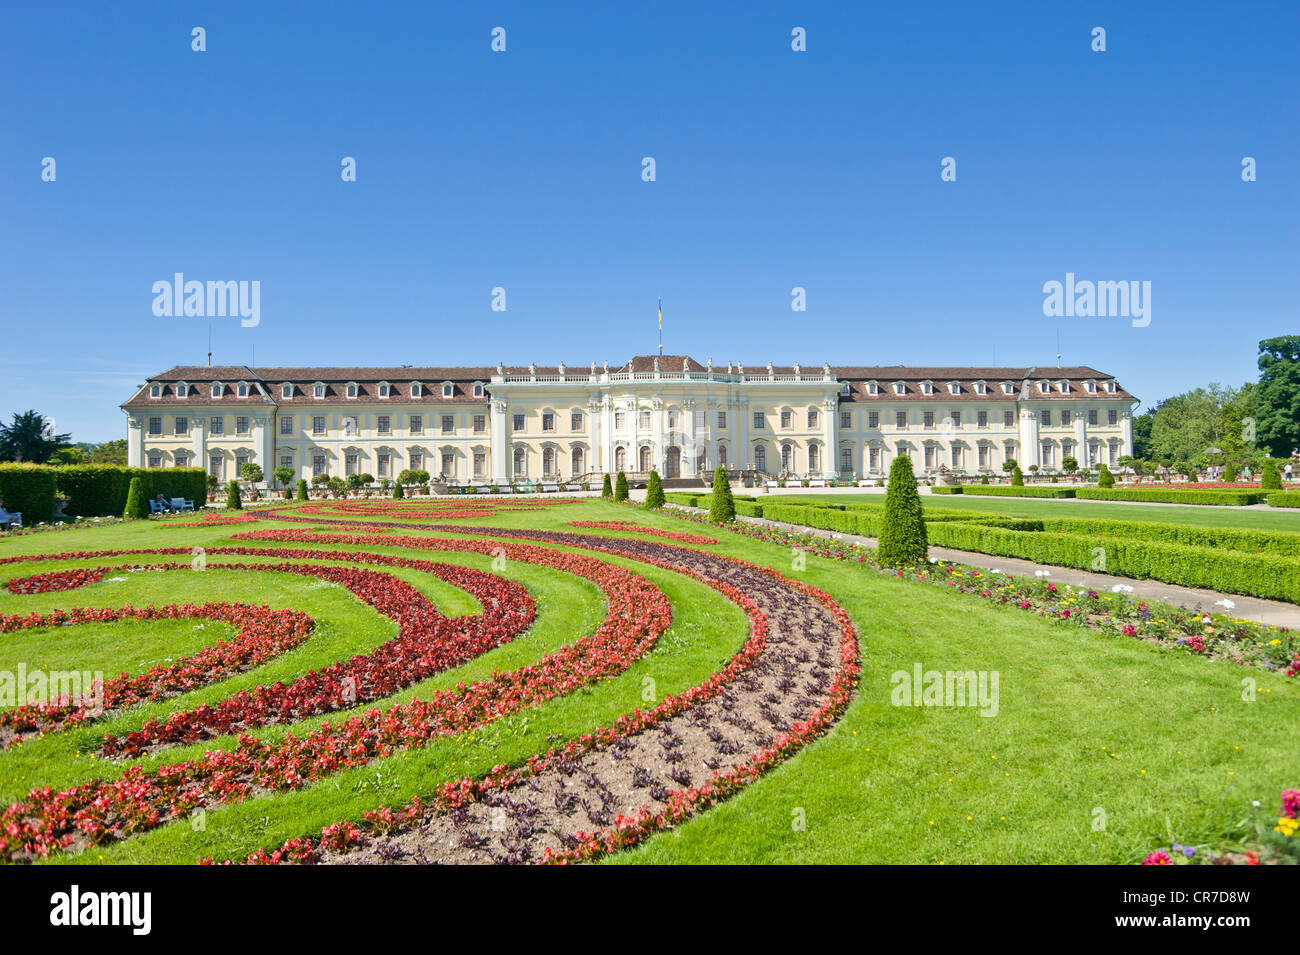 Château de Ludwigsbourg, jardins baroques, Neckar, Bade-Wurtemberg, Allemagne, Europe Banque D'Images